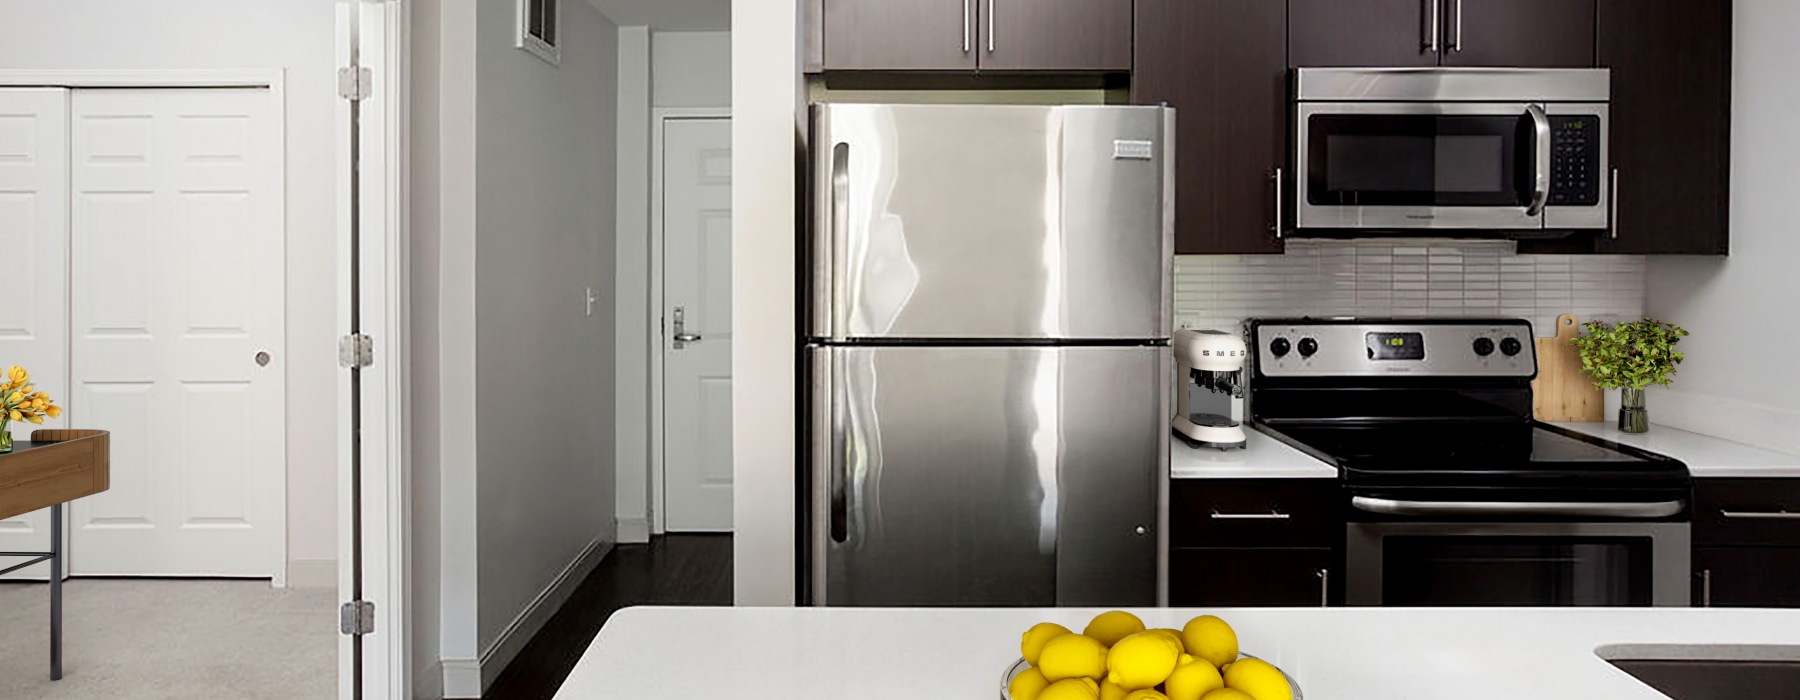 Luxury kitchen featuring stainless steel appliances, quartzkitchen island, and modern finishes 